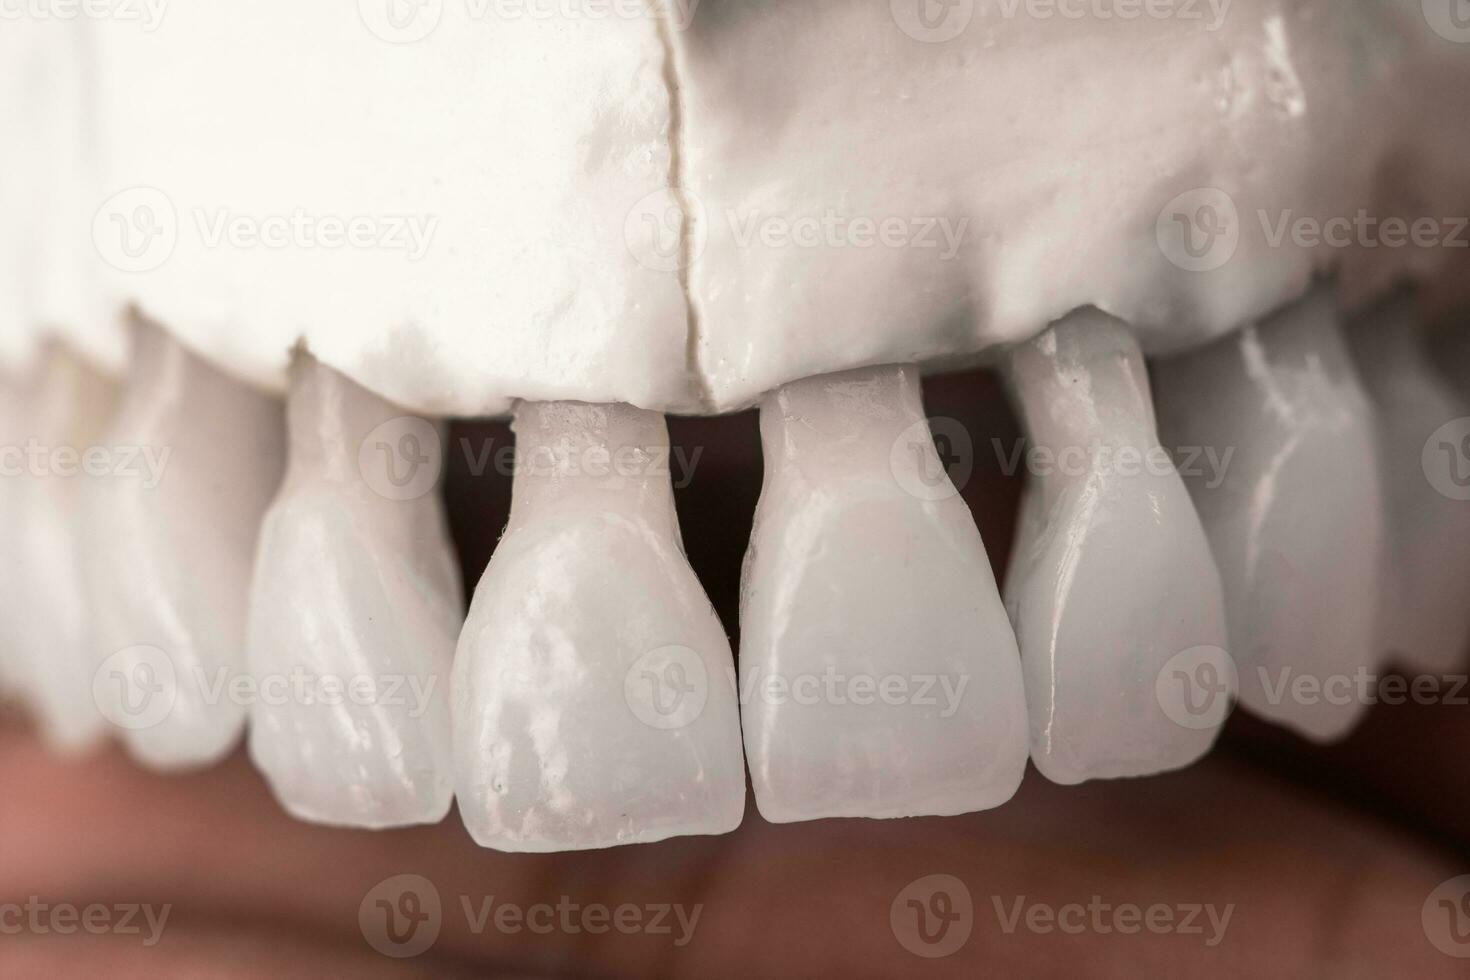 övre mänsklig käke med tänder anatomi modell isolerat på blå bakgrund. friska tänder, dental vård och ortodontisk medicinsk begrepp. foto